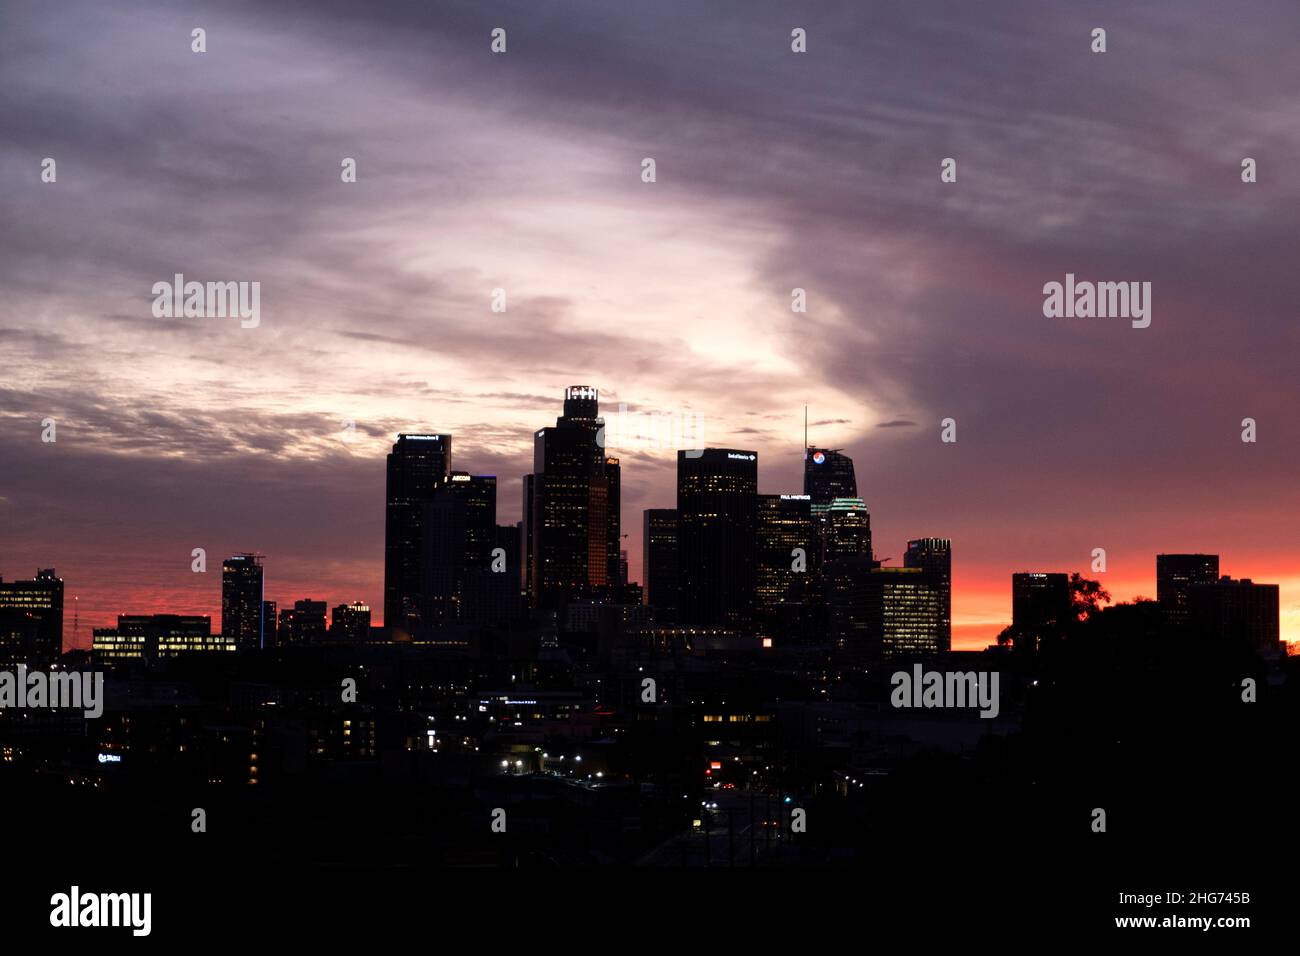 Silueta del horizonte del centro de Los Ángeles con un colorido telón de fondo de puesta de sol Foto de stock